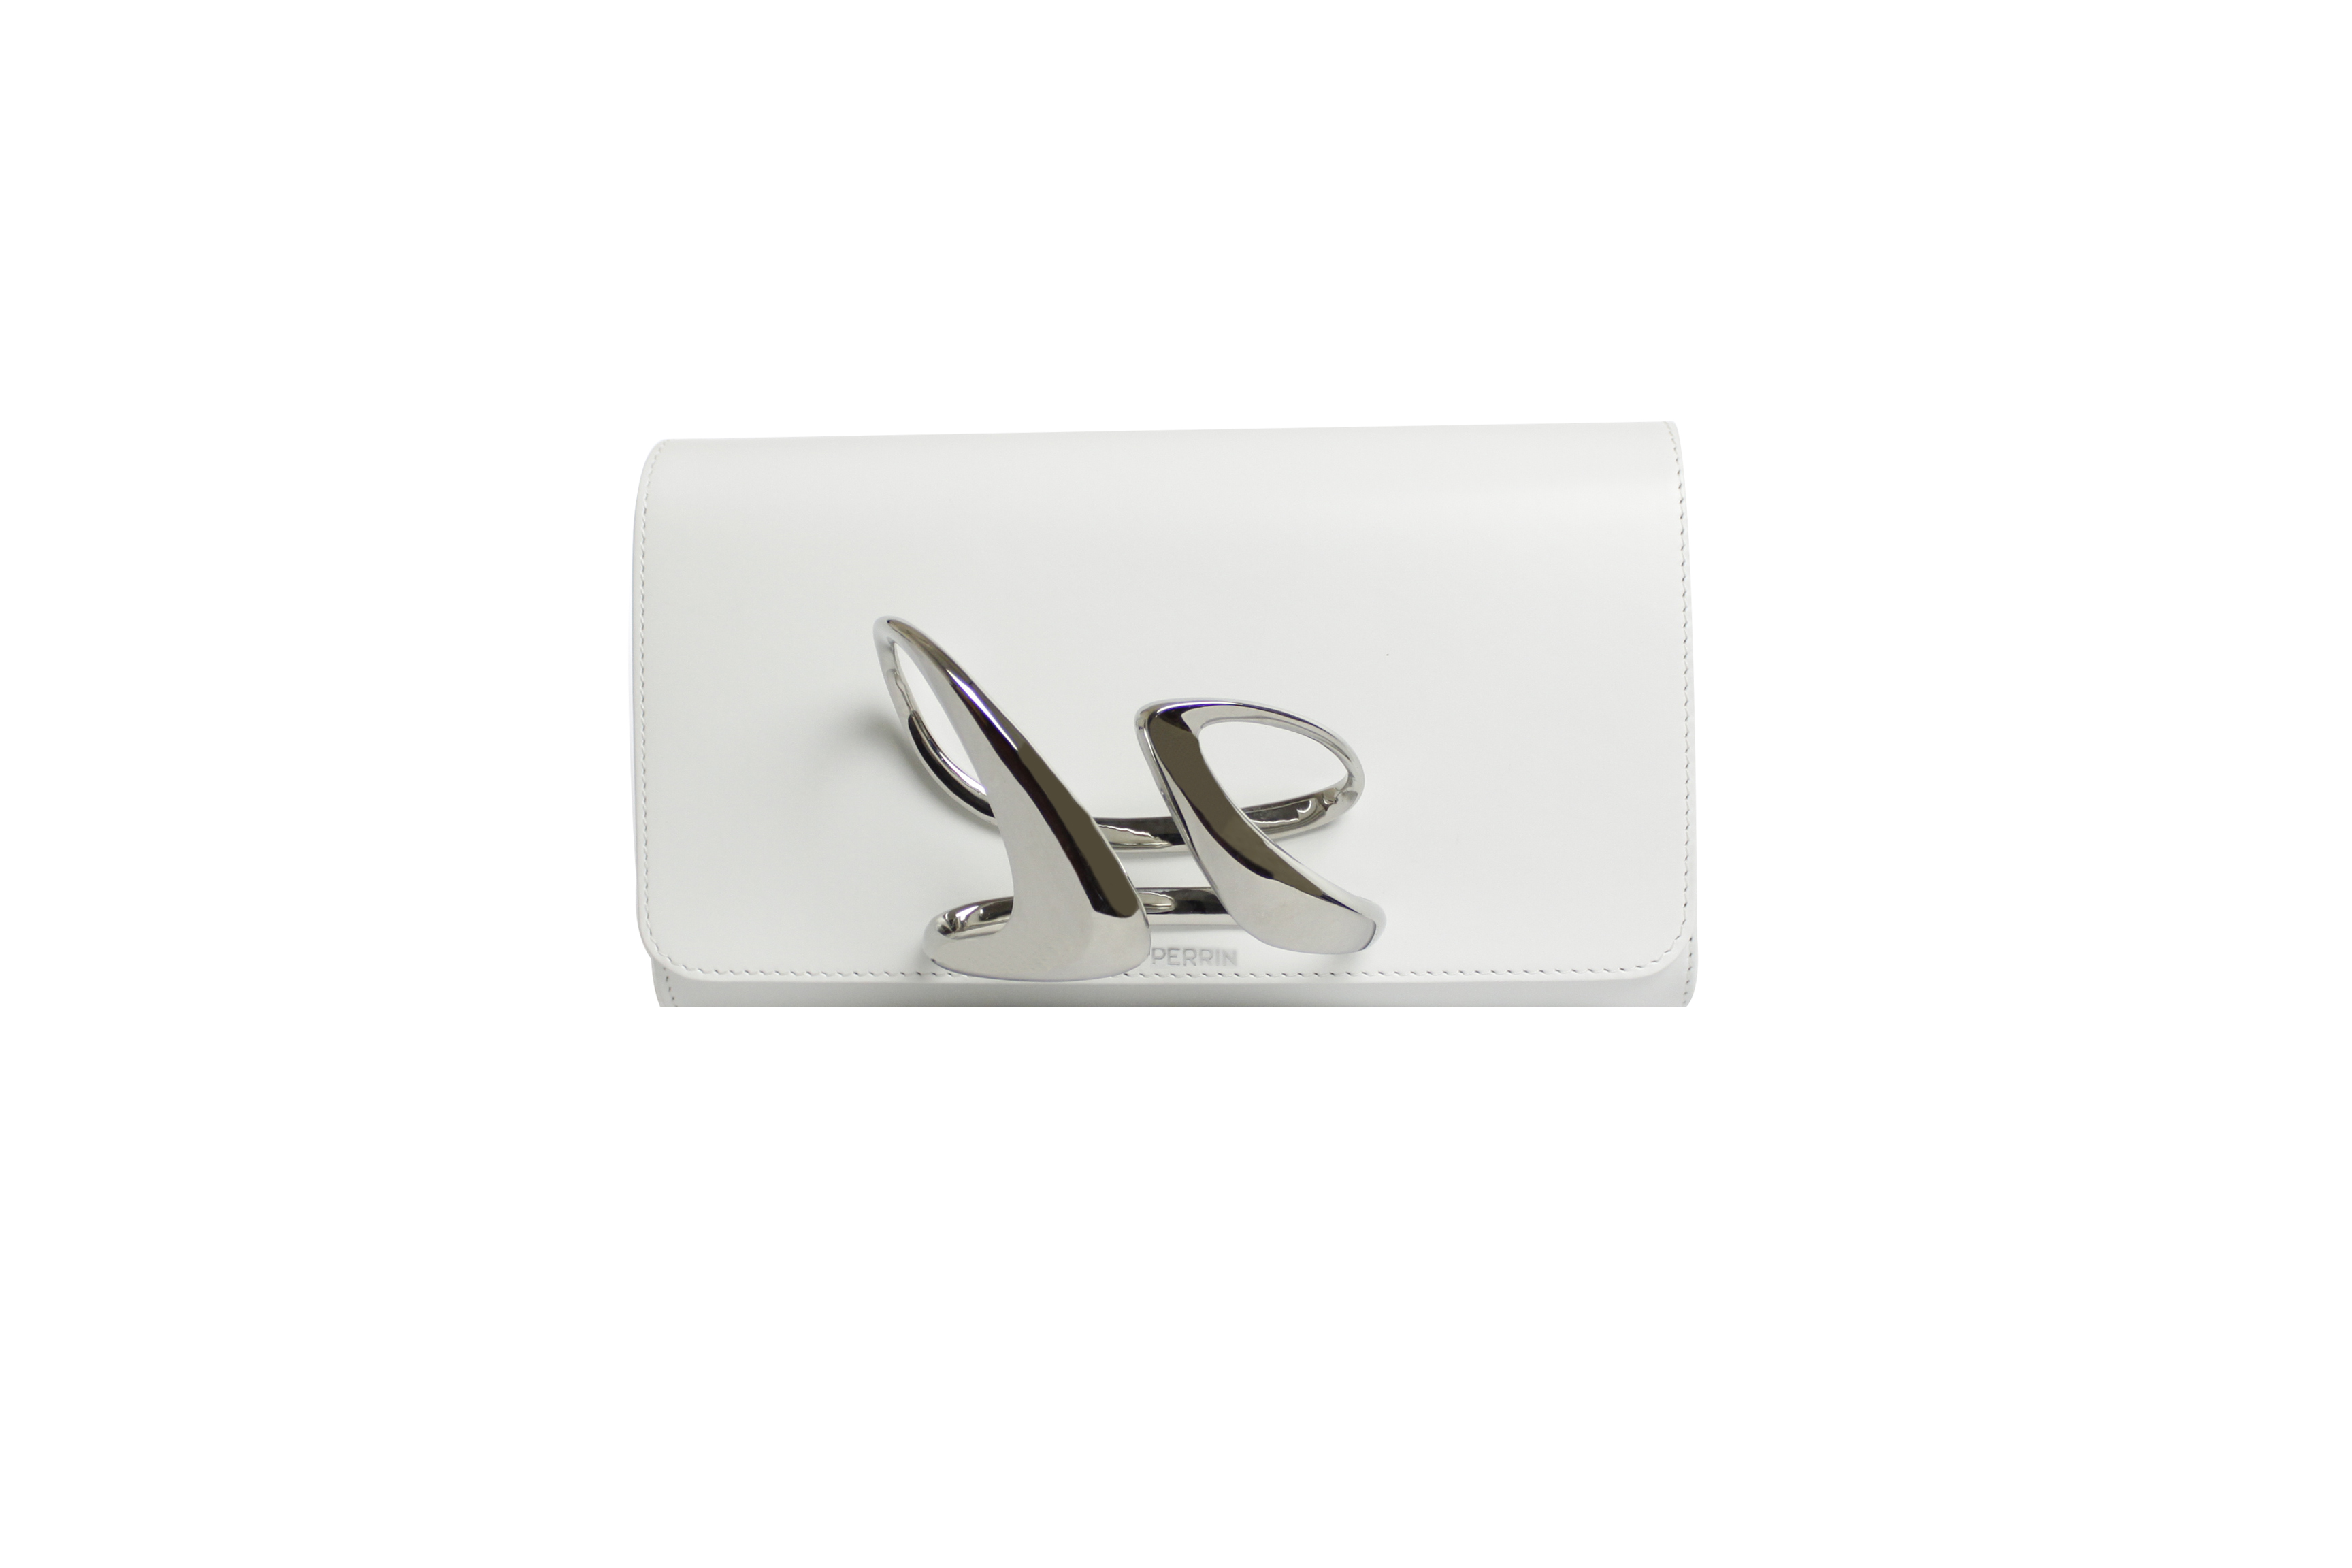 Perrin Paris x Zaha Hadid Strae clutch in white & silver